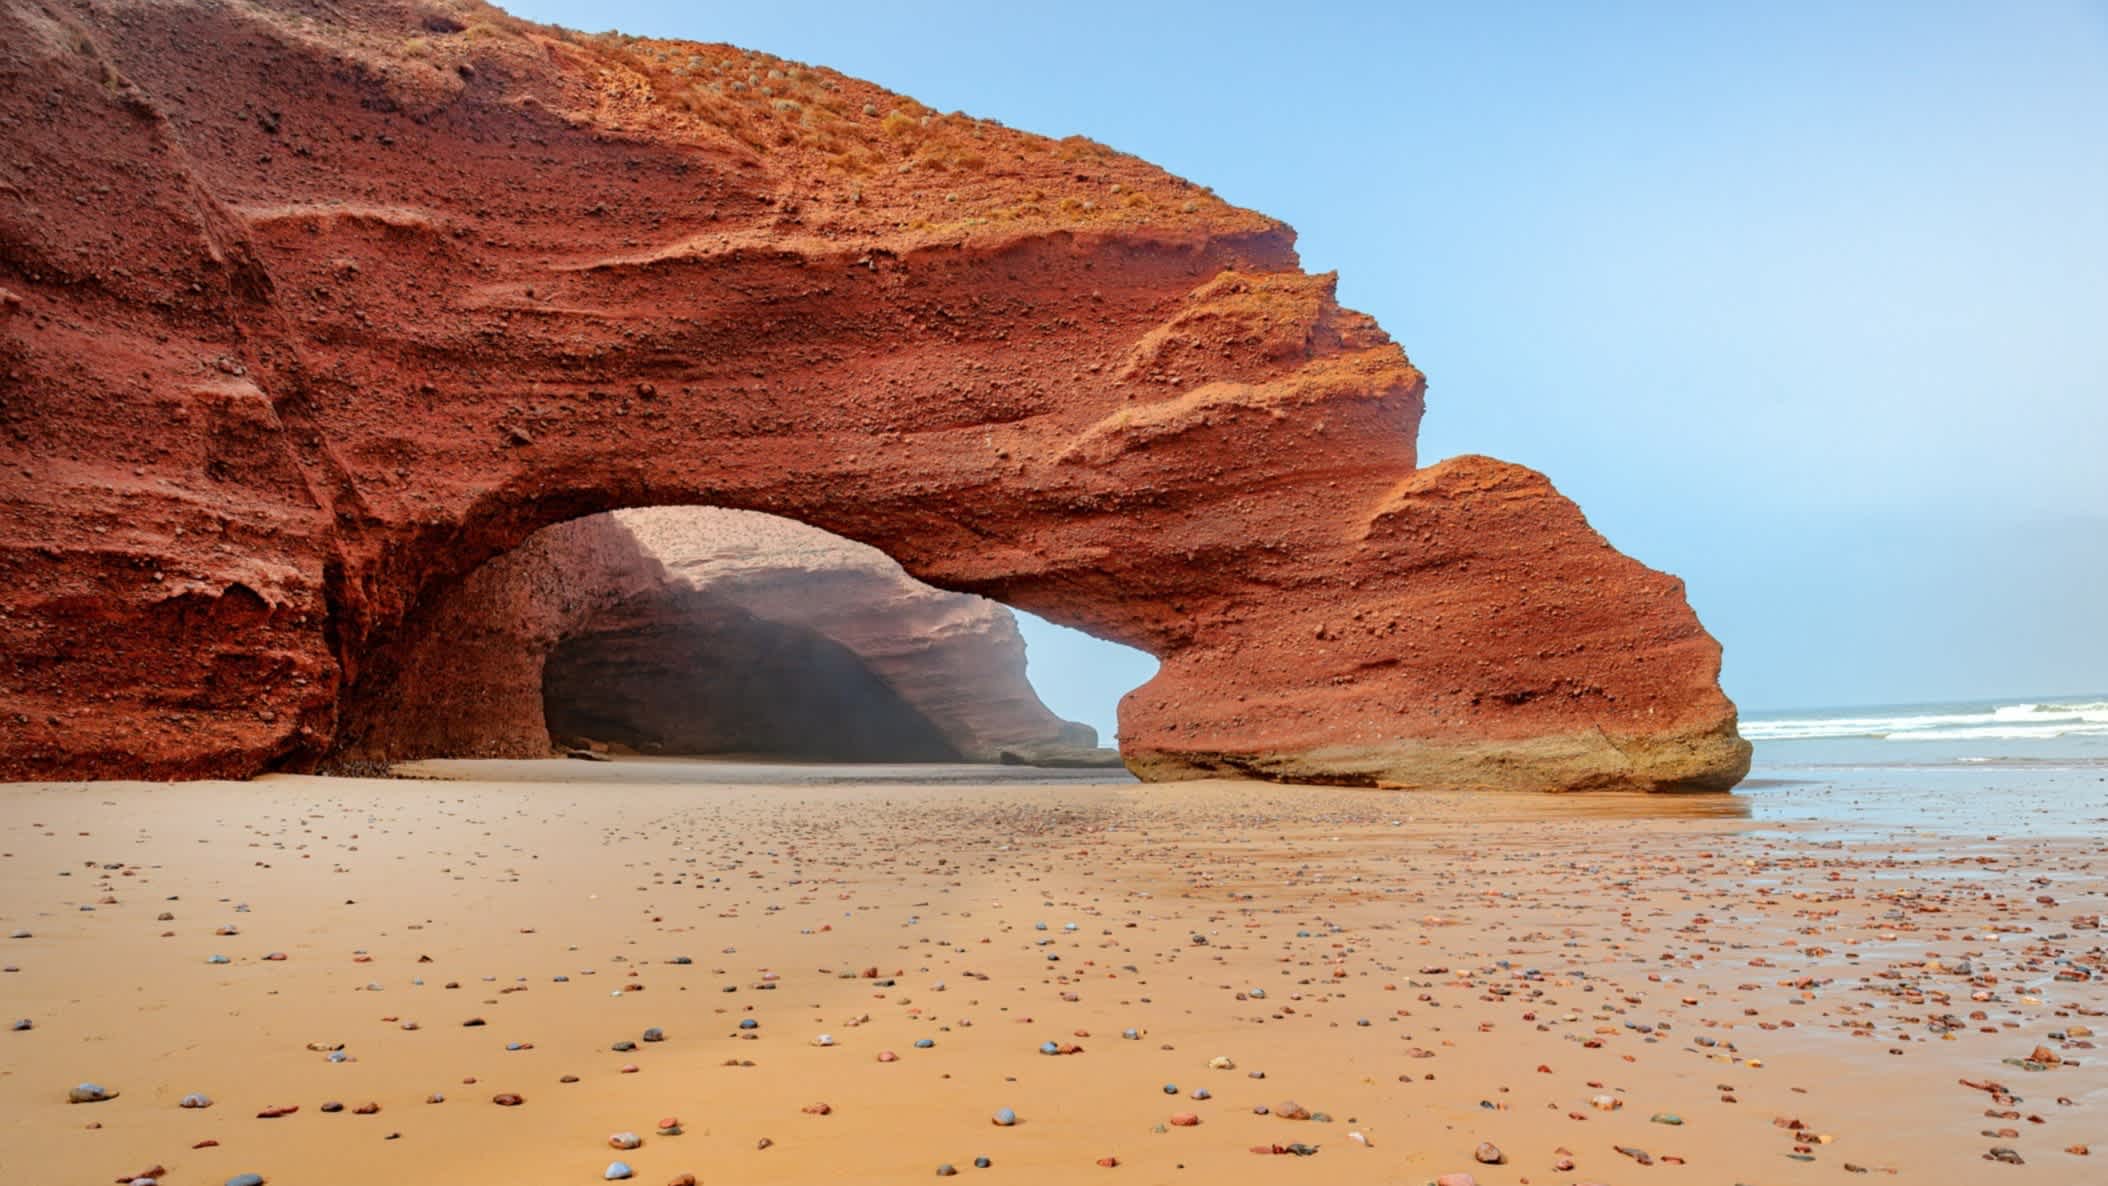 Eine Aufnahme des Strandes von Legzira in Marokko, Nordafrika mit Blick auf einen riesigen roten Steintorbogen und vielen bunten Kieselsteinen am Strand.

